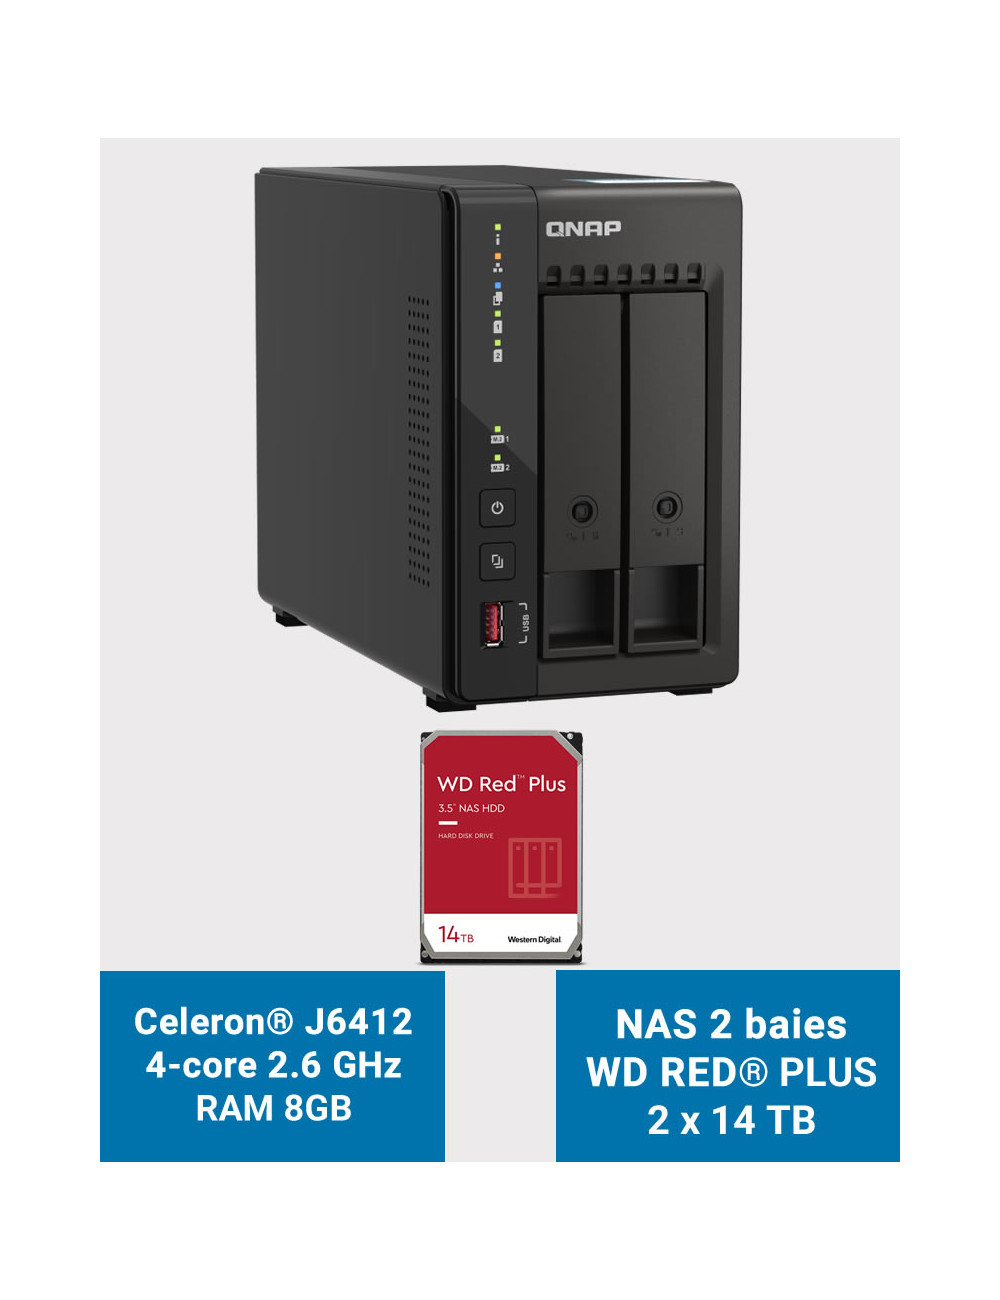 QNAP TS-253E 8GB NAS Server 2 bays WD RED PLUS 28TB (2x14TB)